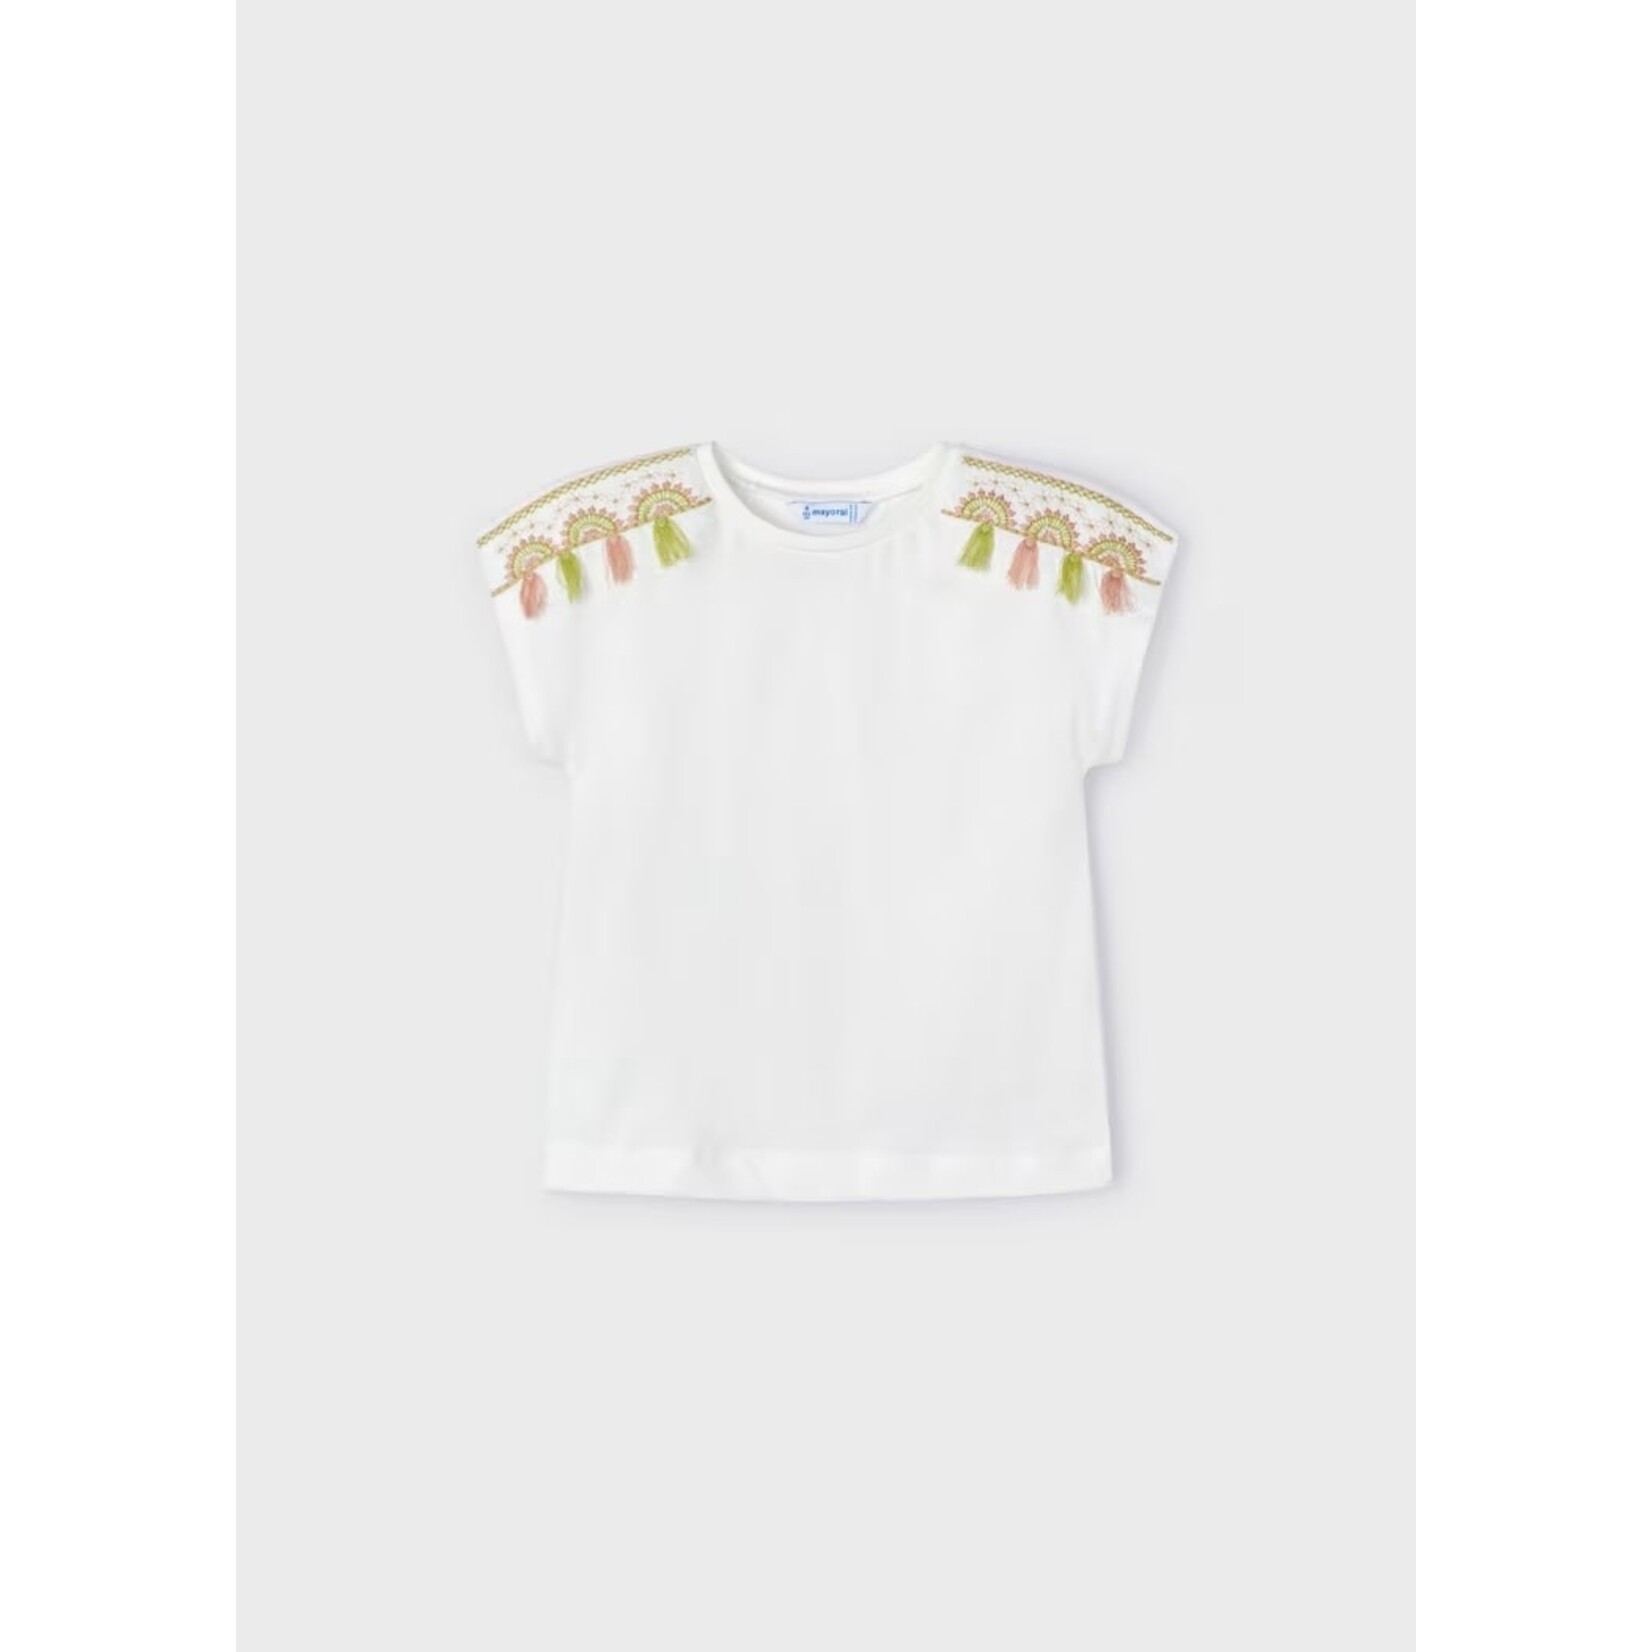 Mayoral MAYORAL - T-shirt sans manches blanc avec décorations roses et vertes aux épaules